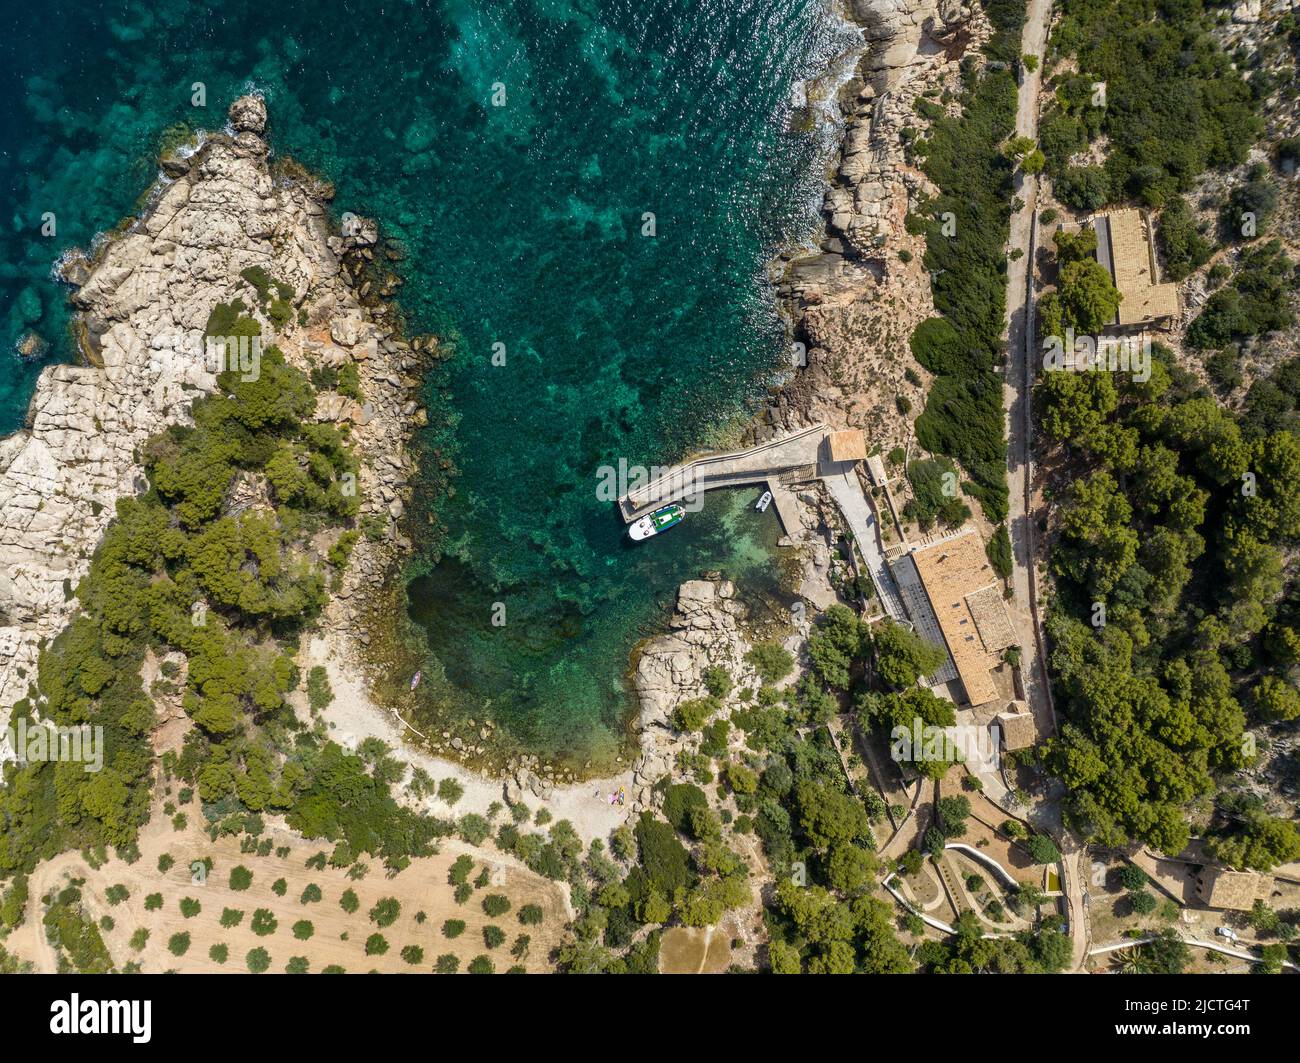 Port de Sa Dragera Mallorca, kleiner Hafen mit einer Fähranlegestelle zur Insel dragera. Luftaufnahme. Stockfoto